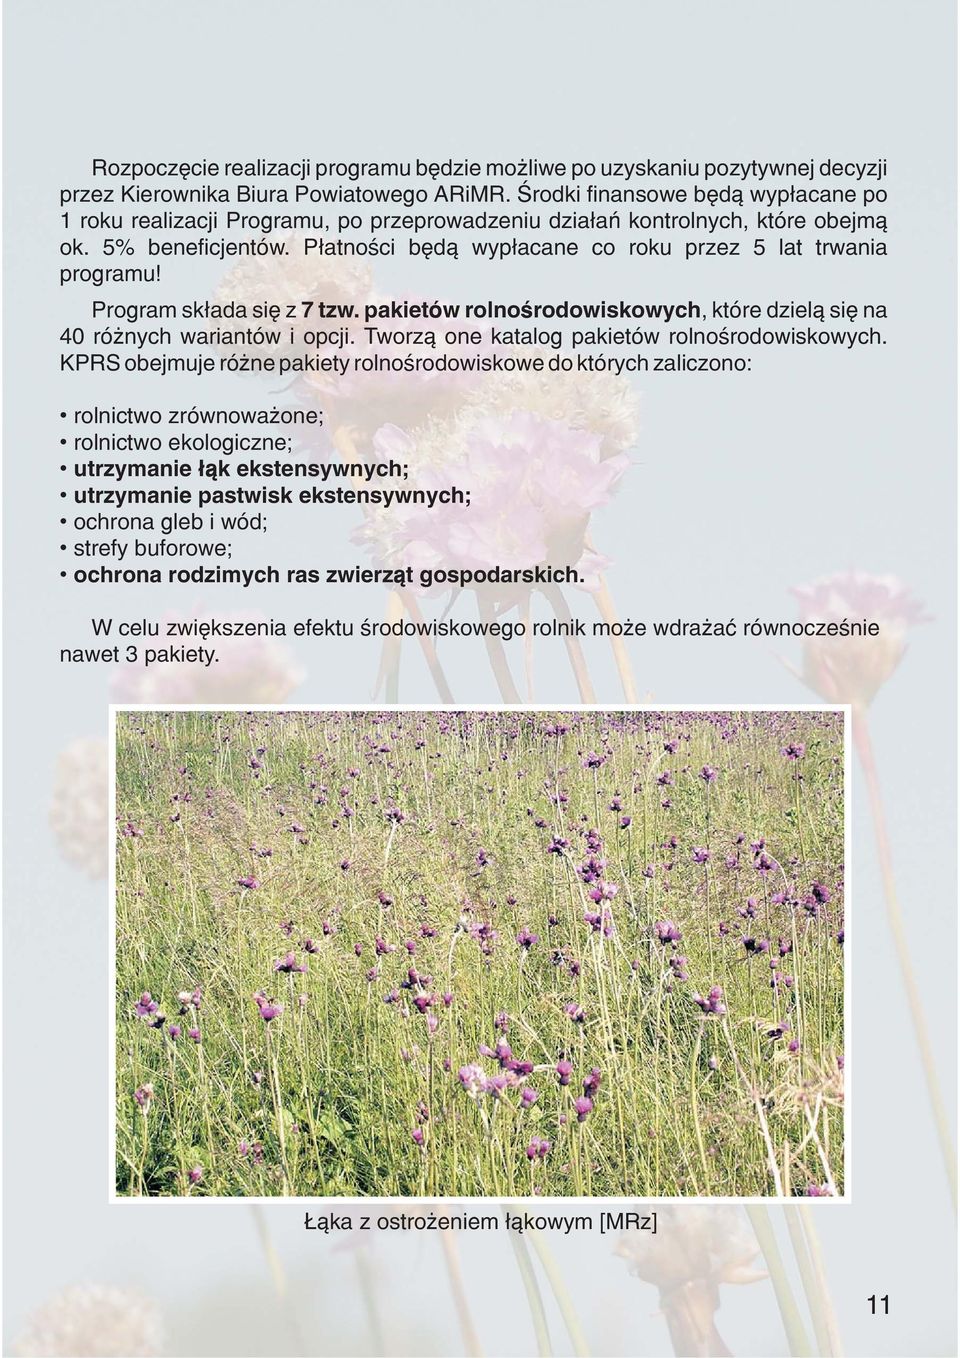 Program sk³ada siê z 7 tzw. pakietów rolnoœrodowiskowych, które dziel¹ siê na 40 ró nych wariantów i opcji. Tworz¹ one katalog pakietów rolnoœrodowiskowych.